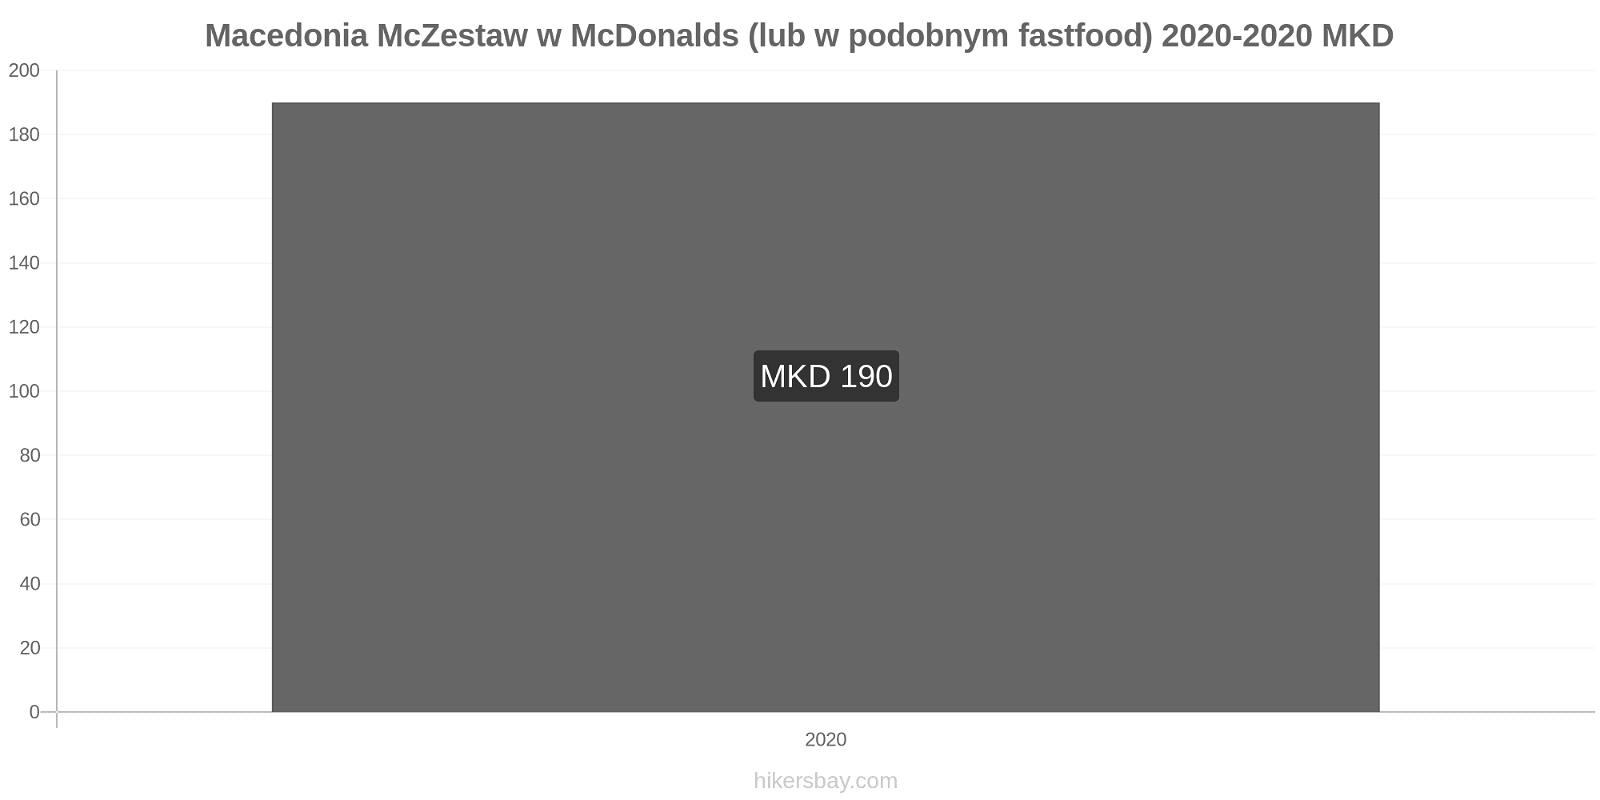 Macedonia zmiany cen McZestaw w McDonalds (lub w podobnym fastfood) hikersbay.com